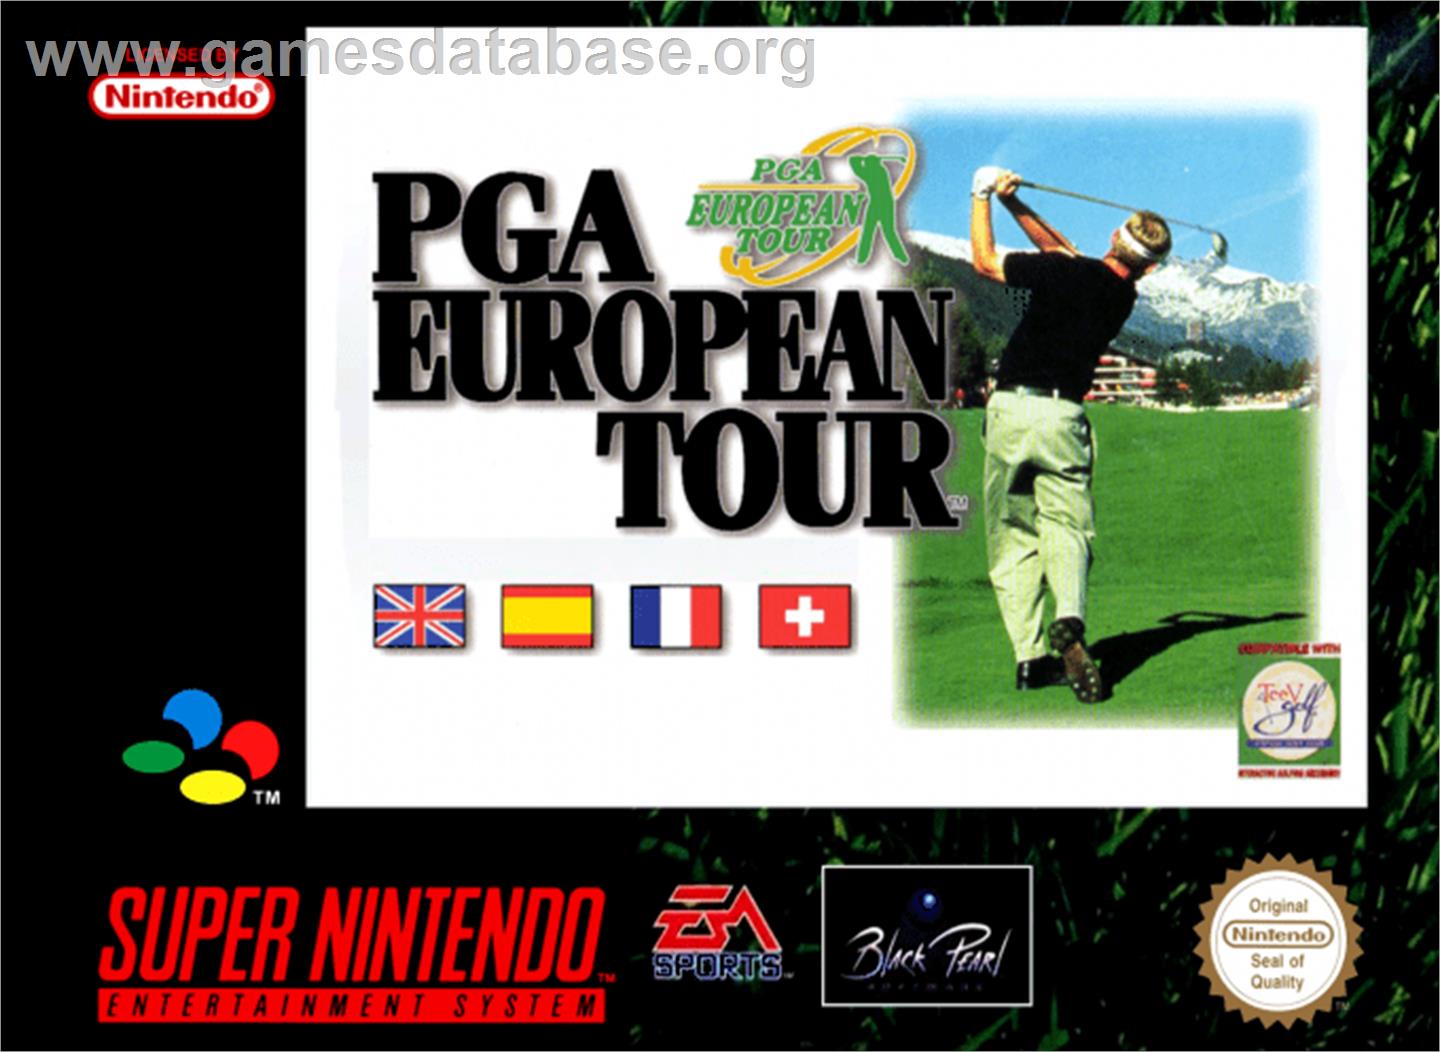 PGA European Tour - Nintendo SNES - Artwork - Box